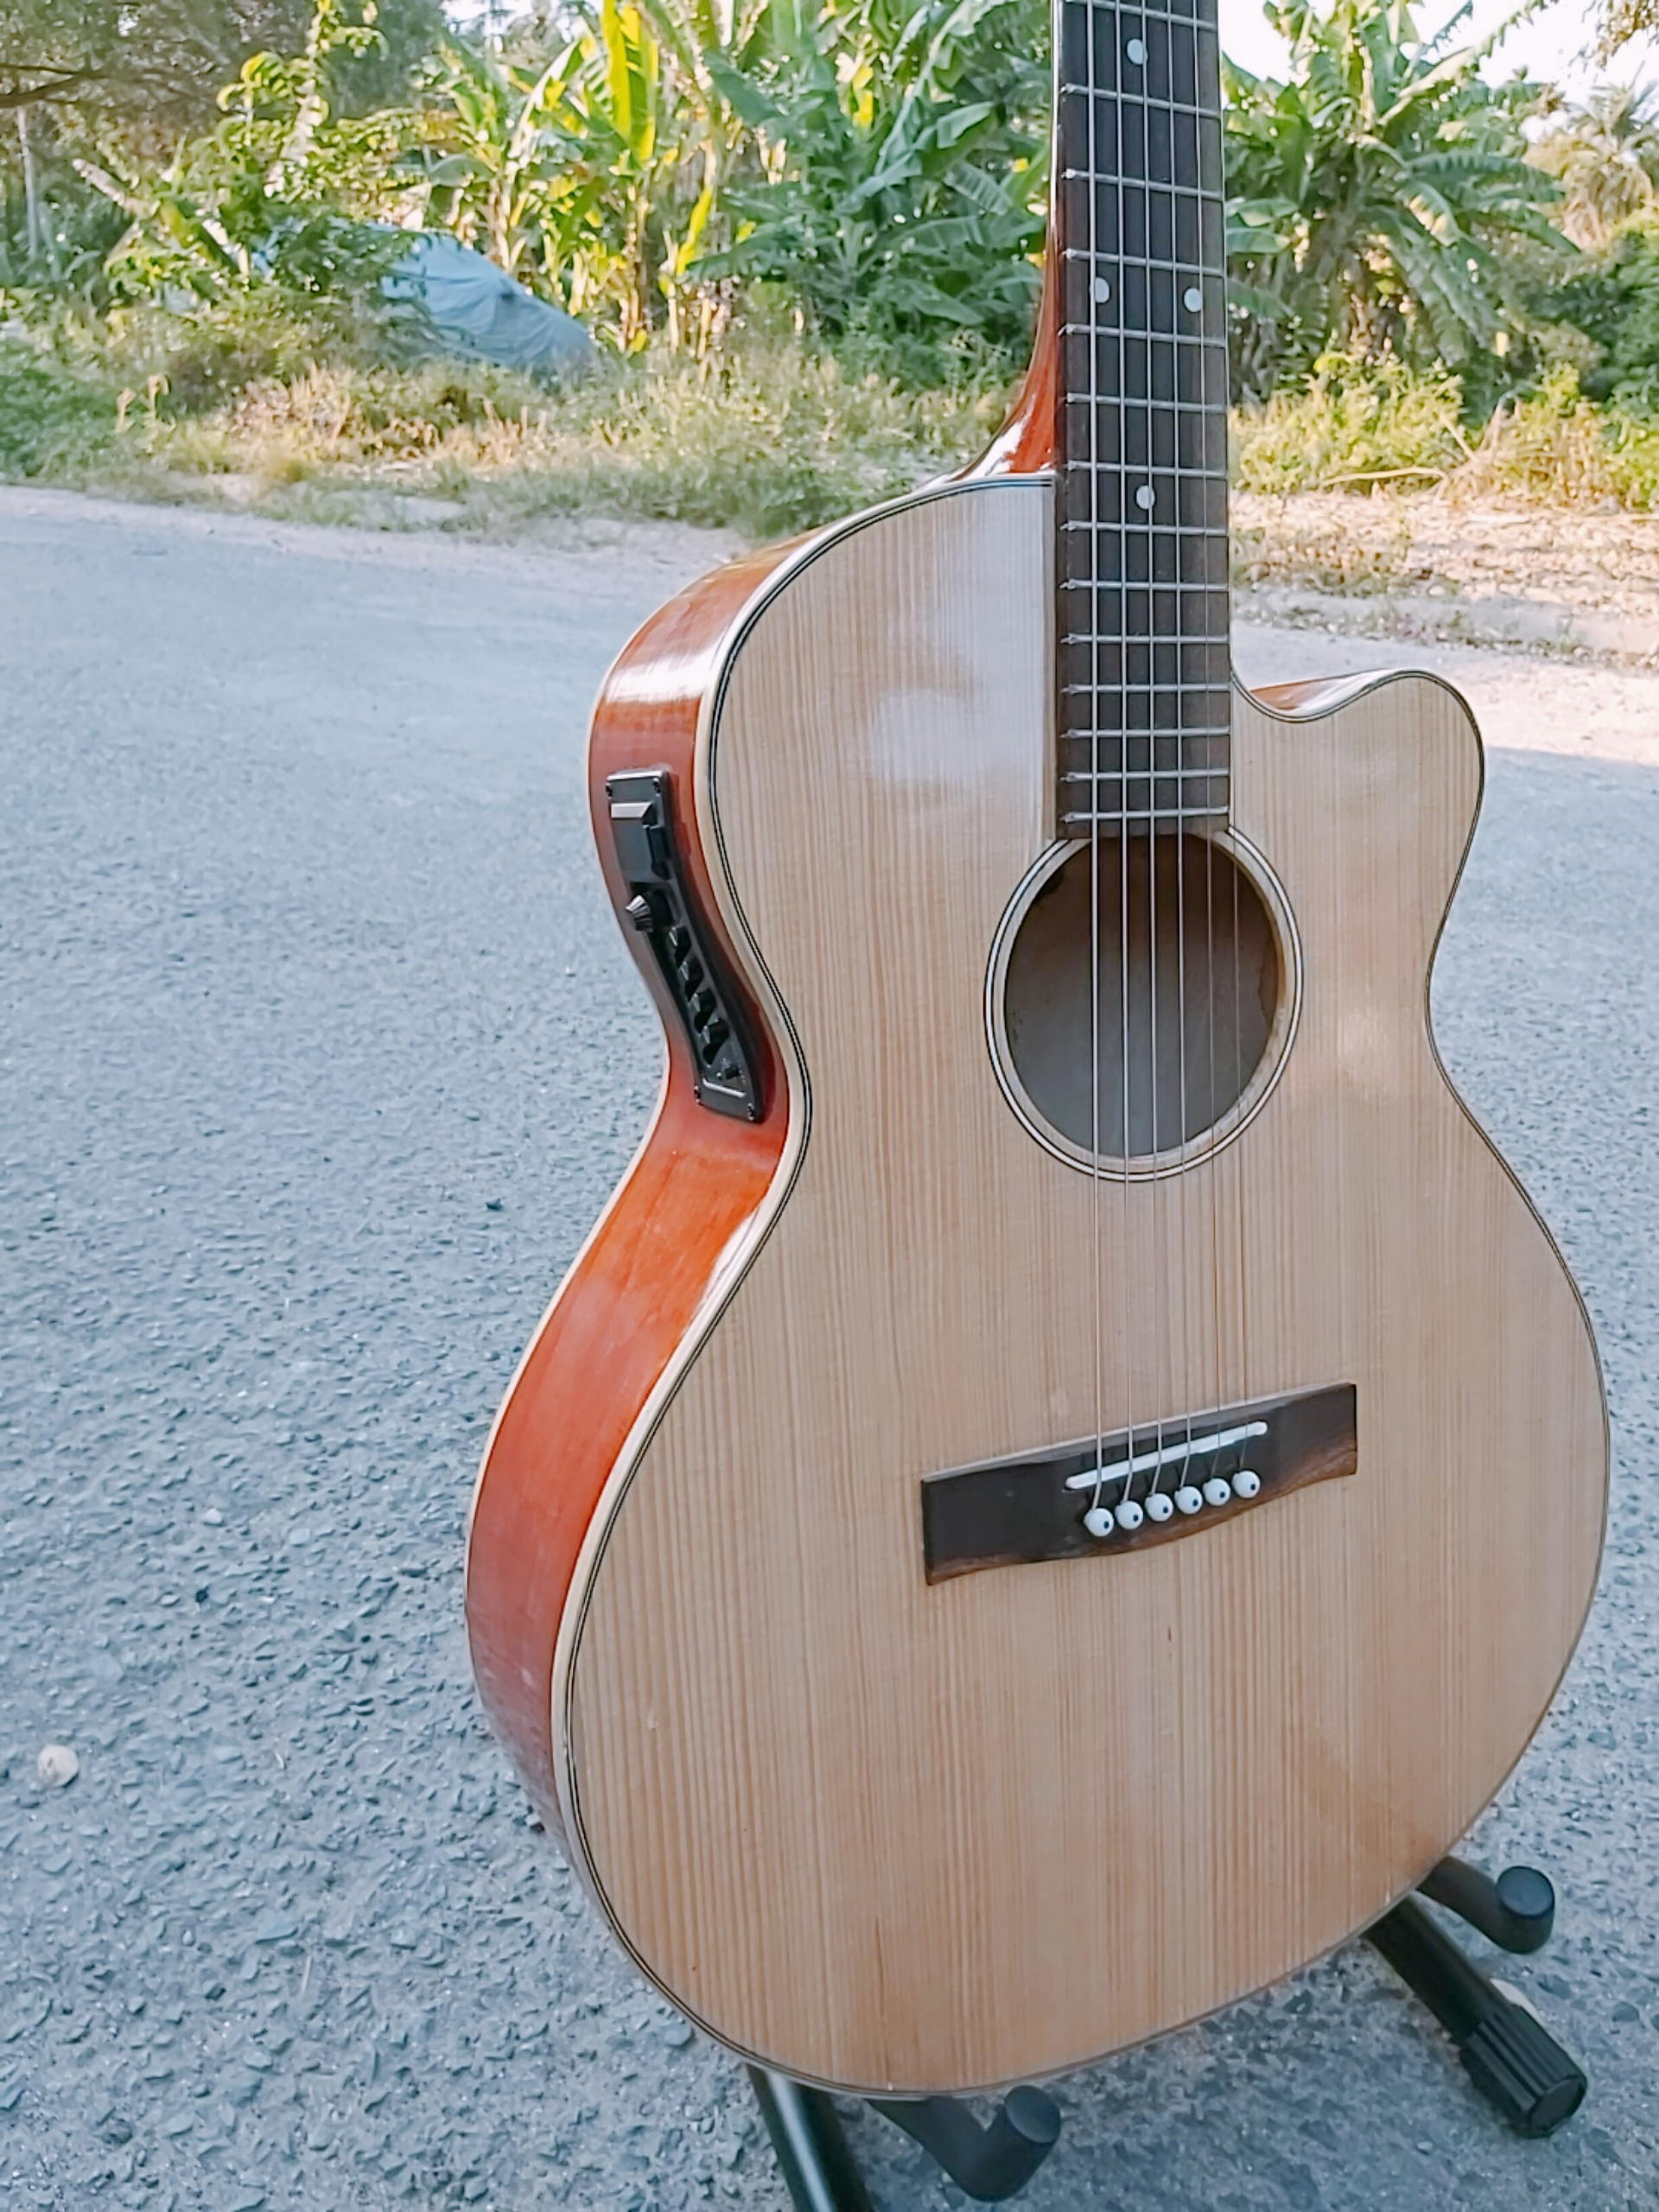 Đán guitar Acoustic gỗ gắn eq 7545 - đàn có ty KBD - Đàn có ty chống cong chơi được lâu dài